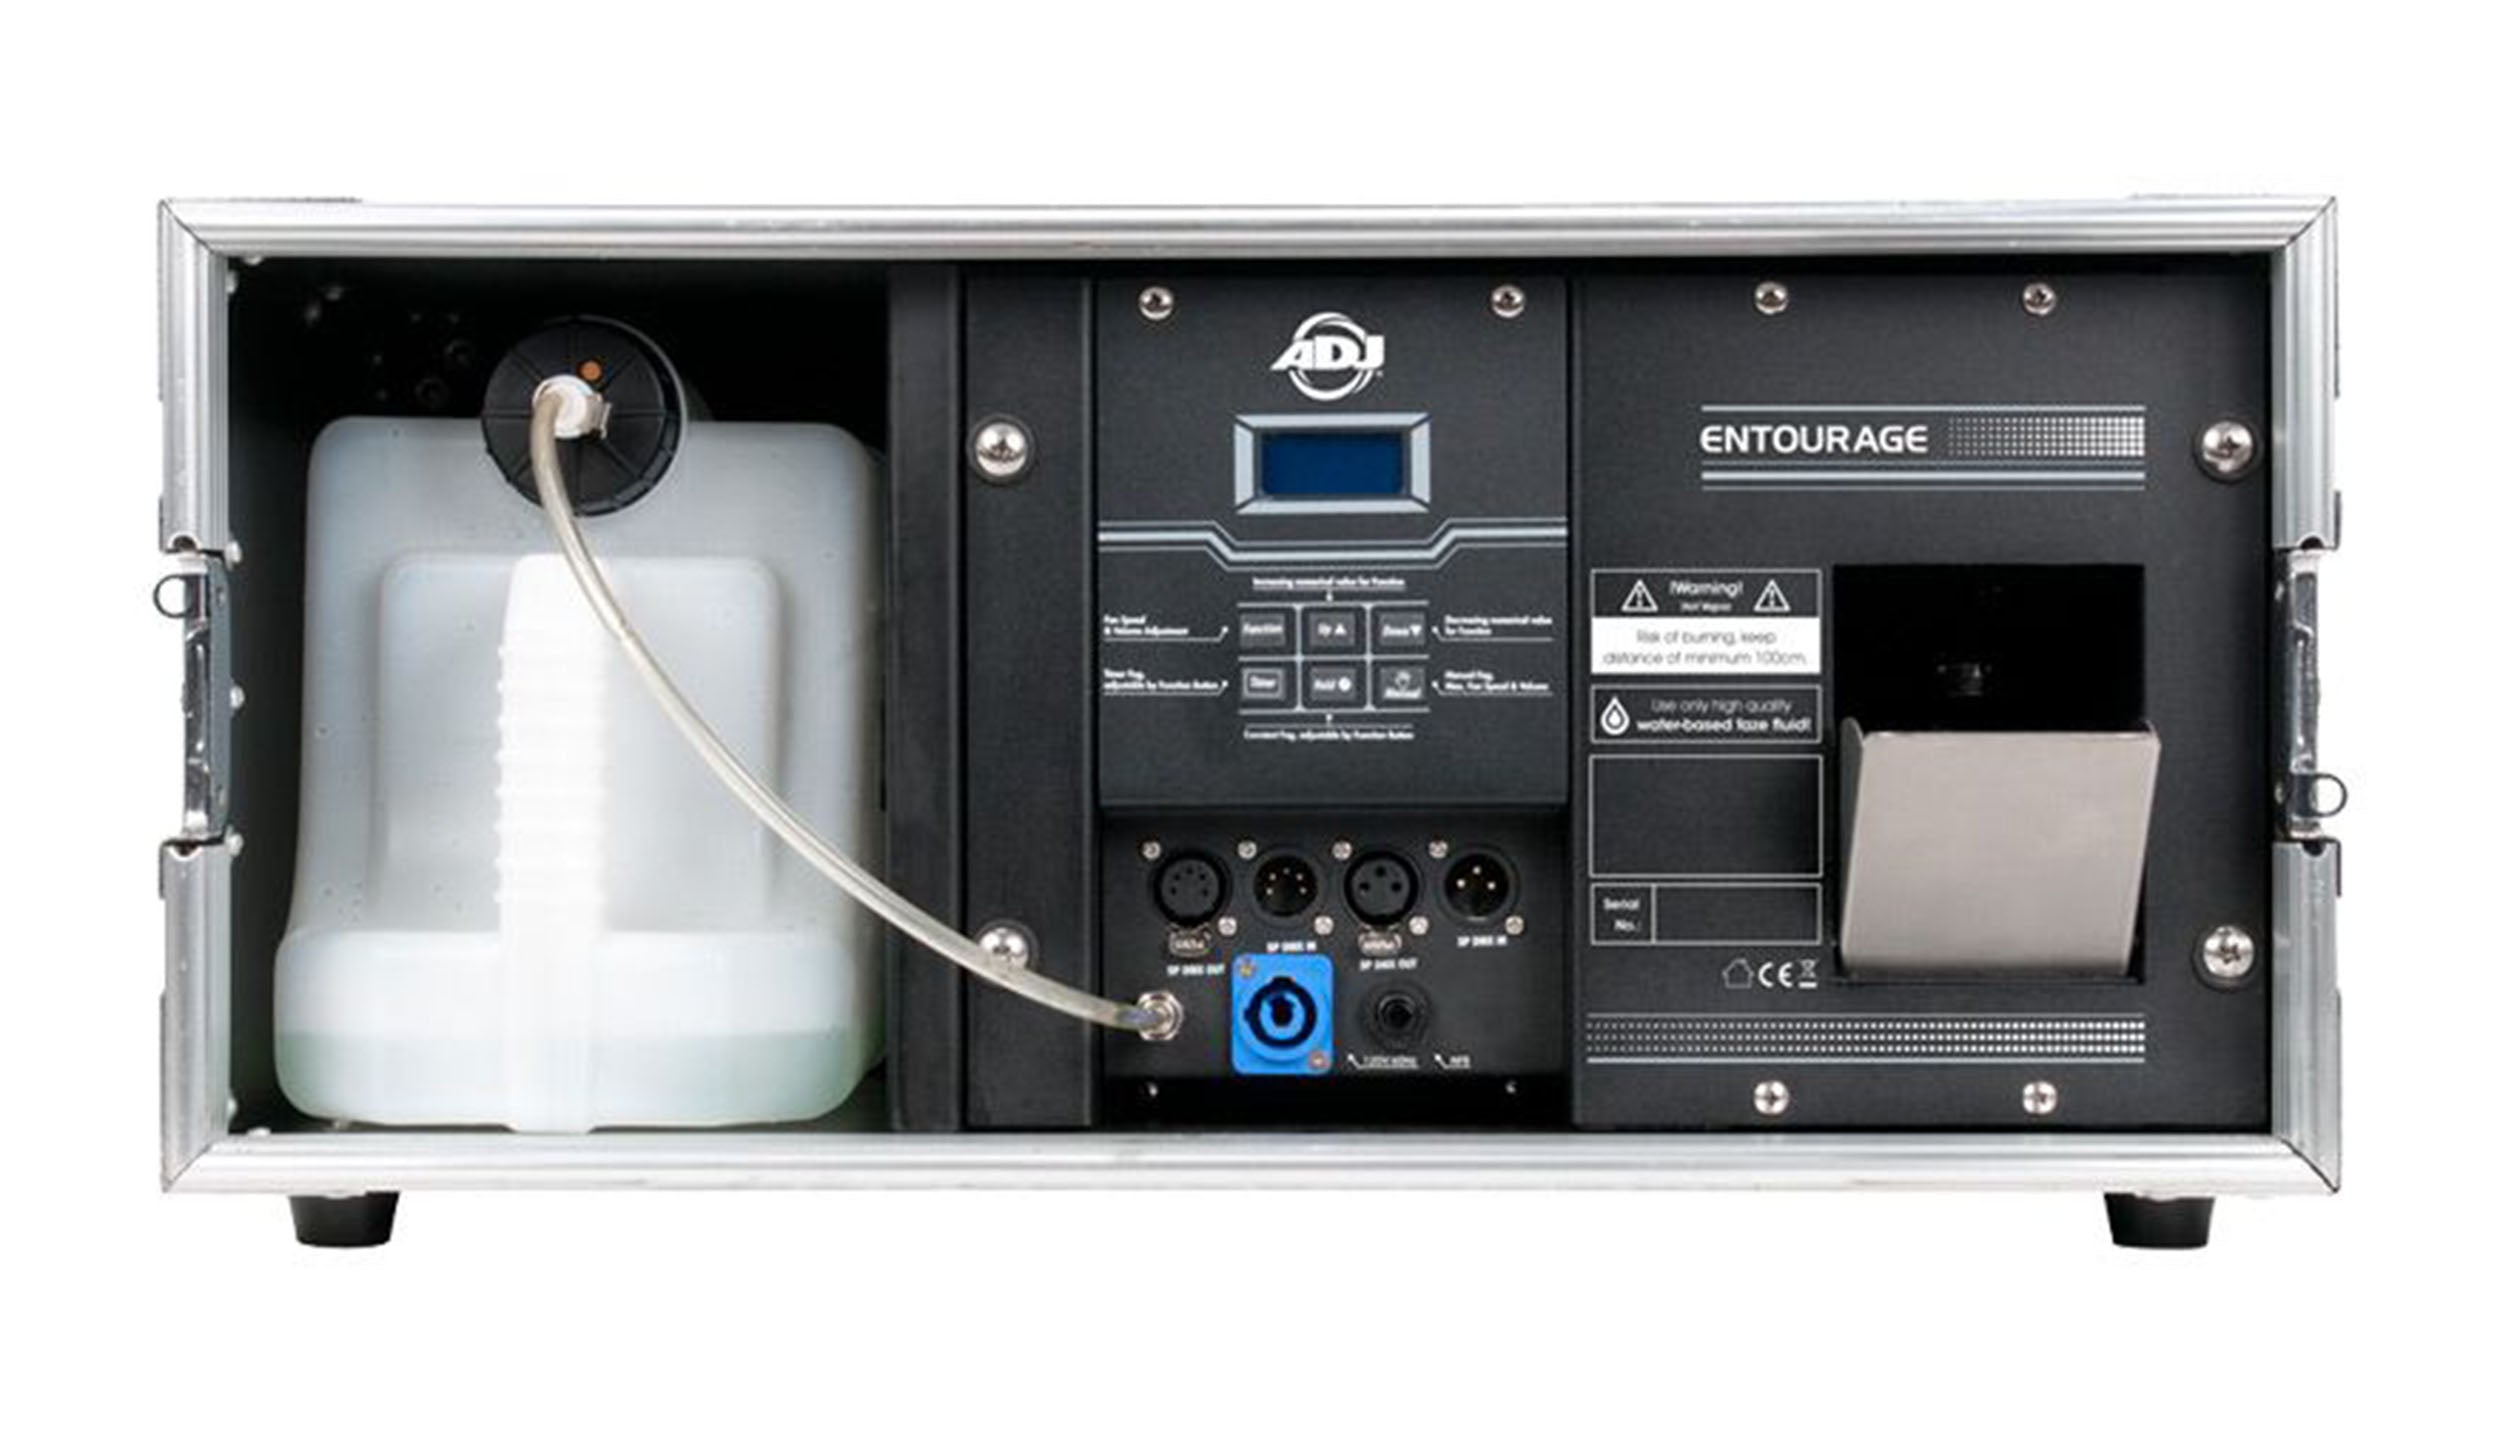 ADJ Entourage, Powerful 1400-Watt Foggy Haze Generator with DMX Protocol ENT469 by ADJ